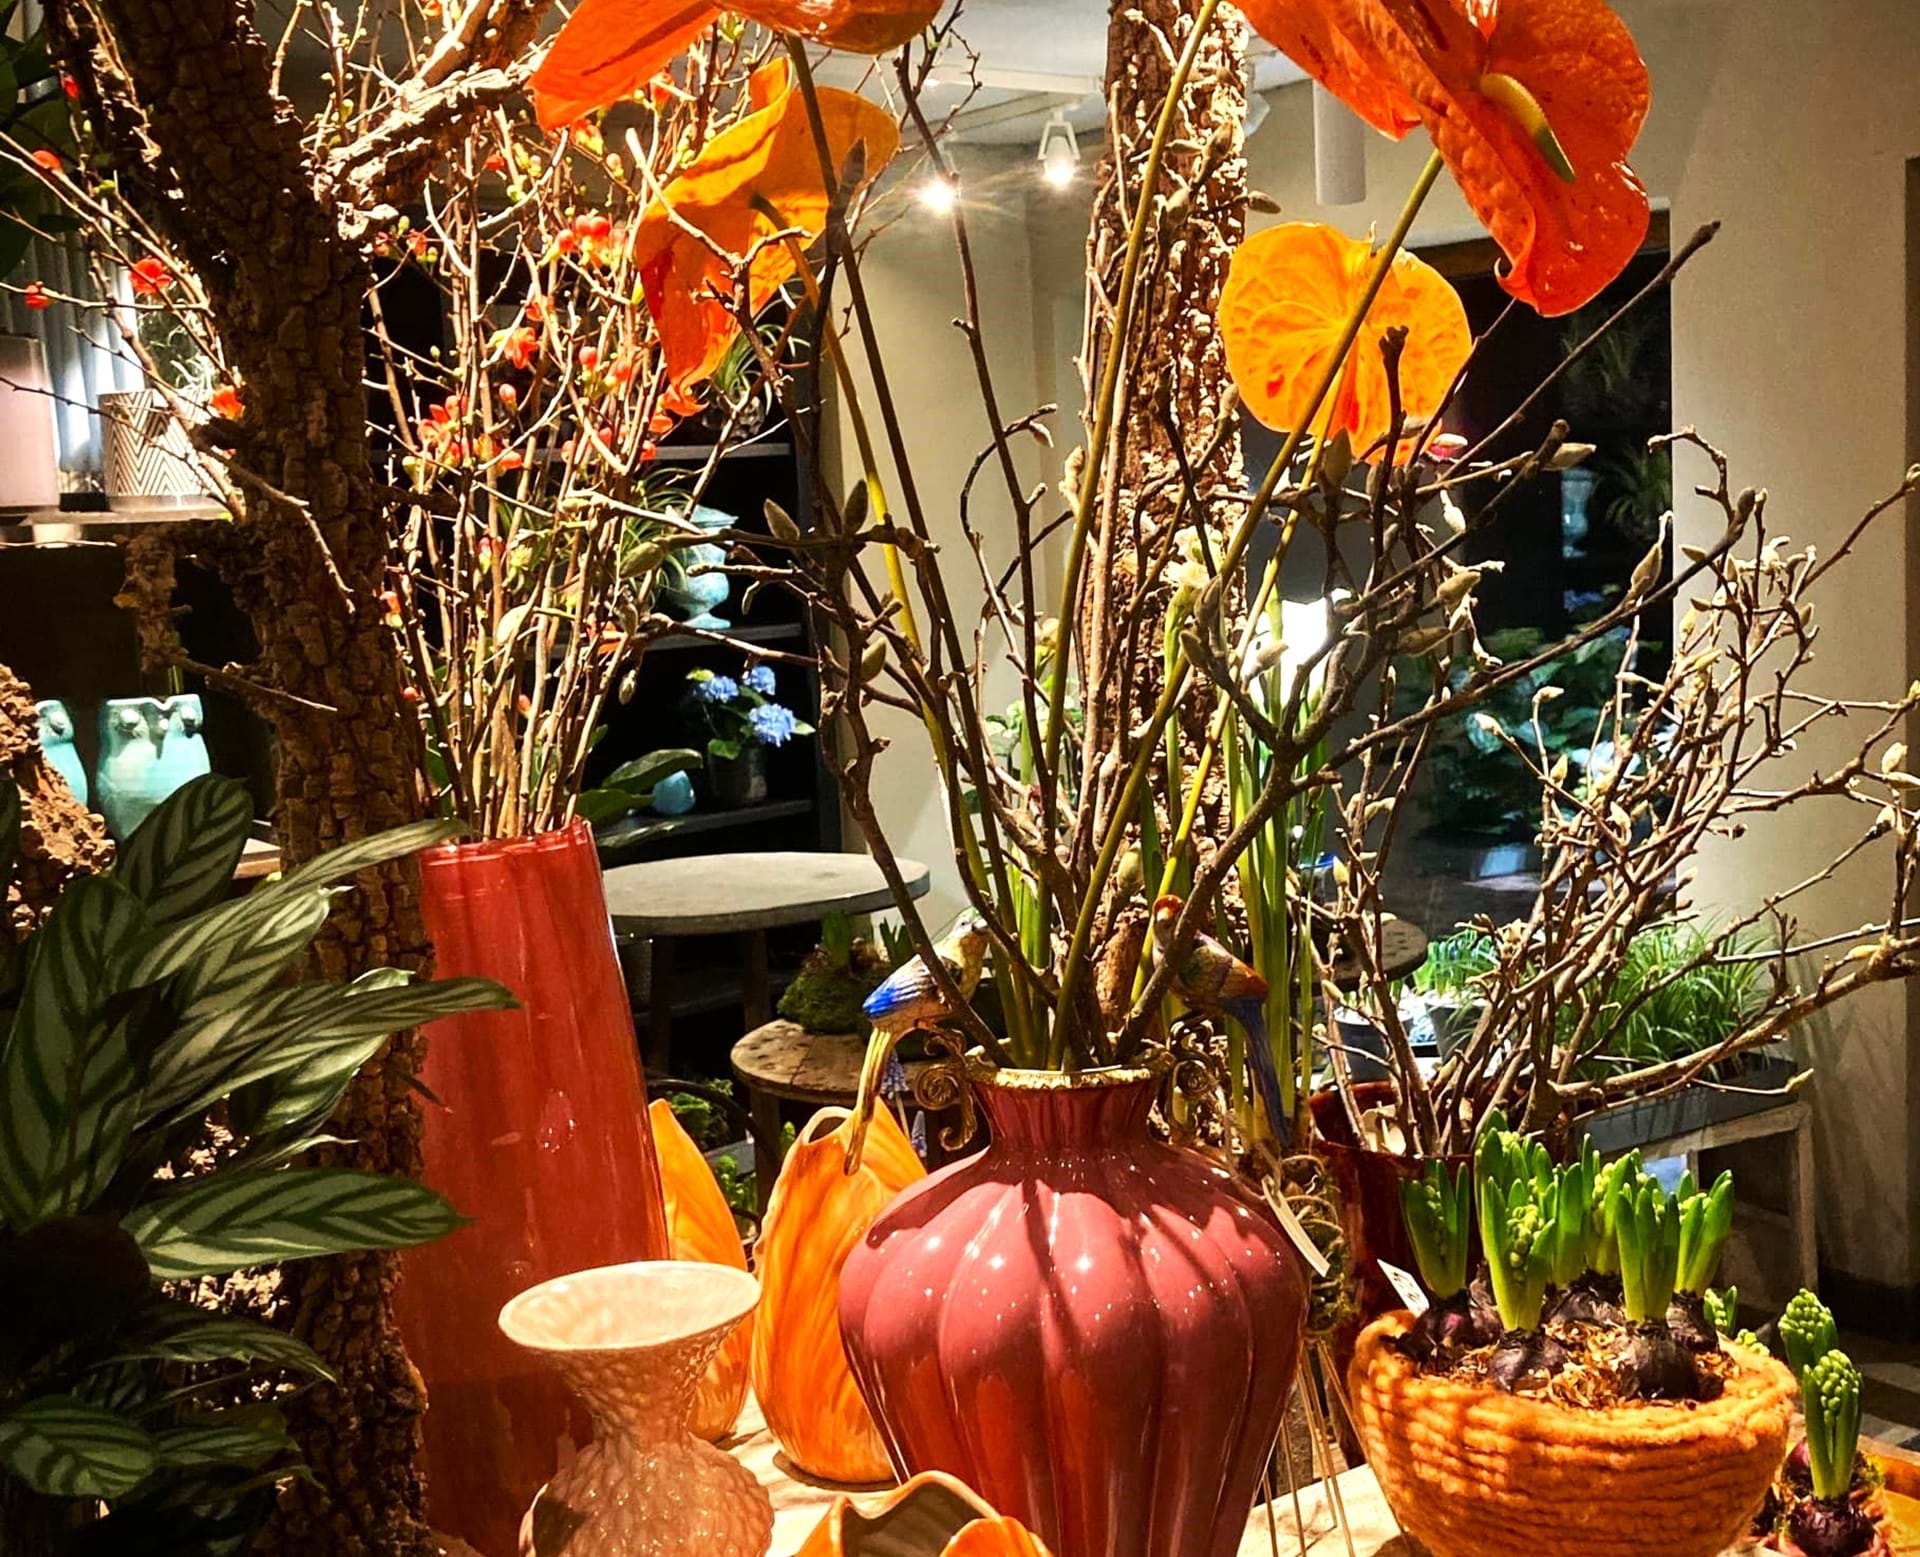 Dekoreret bord i butikken med orange og røde nuancer i vaser.